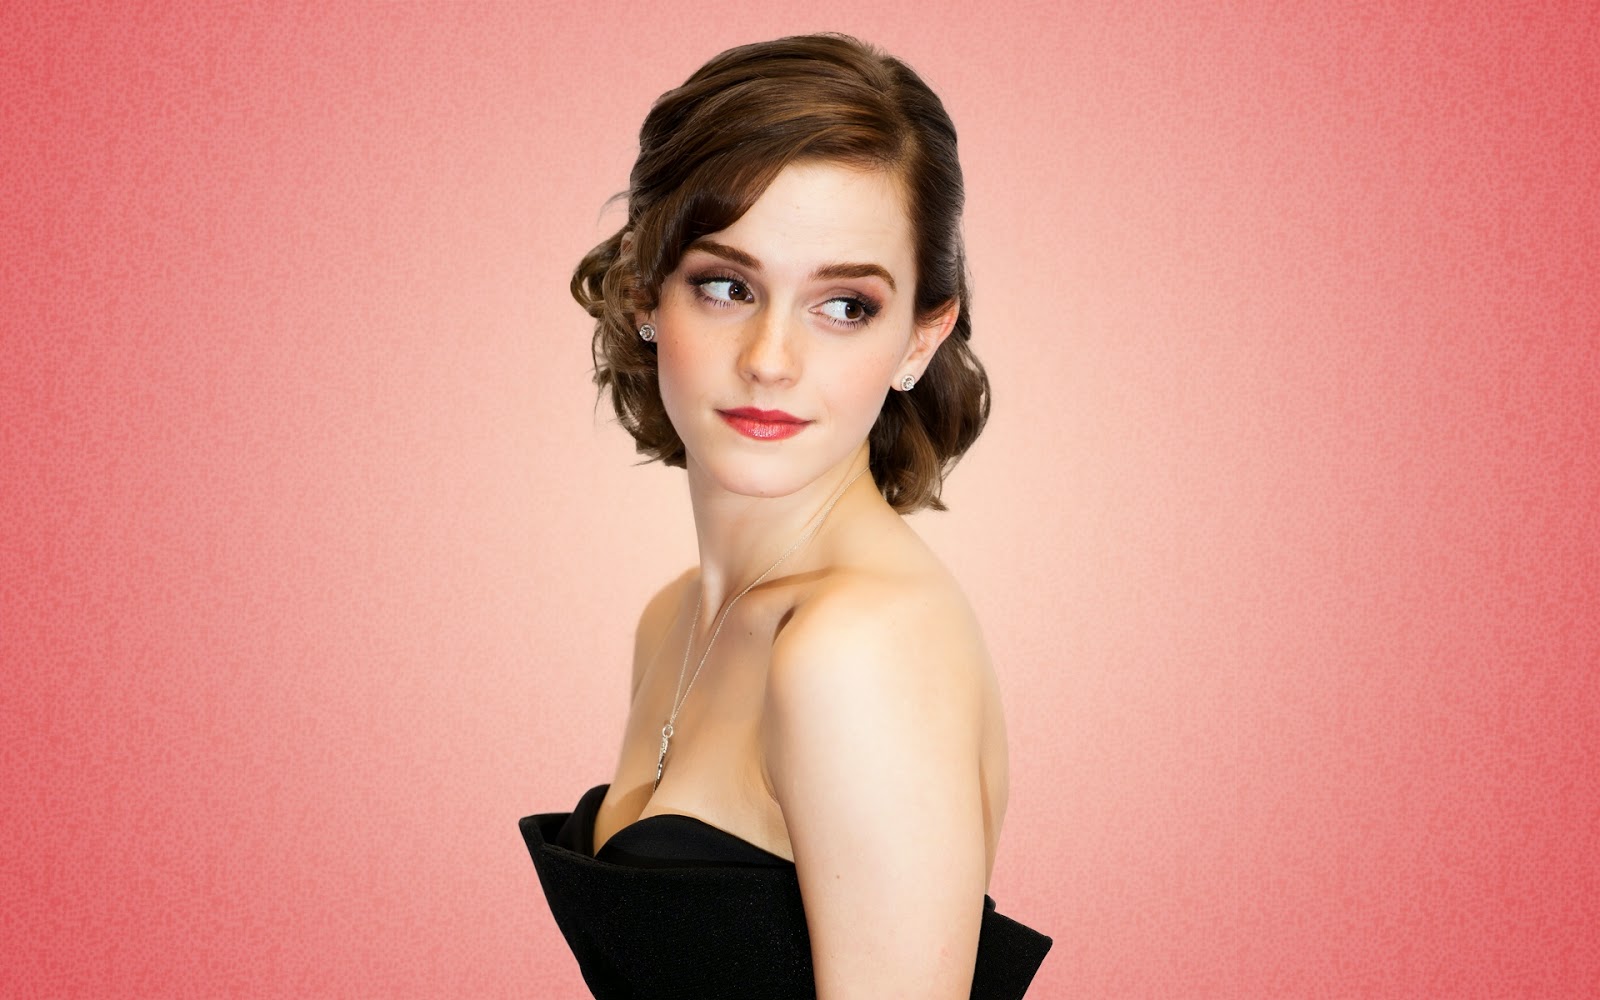 Emma Watson Cast As Belle In New Beauty & The Beast Film